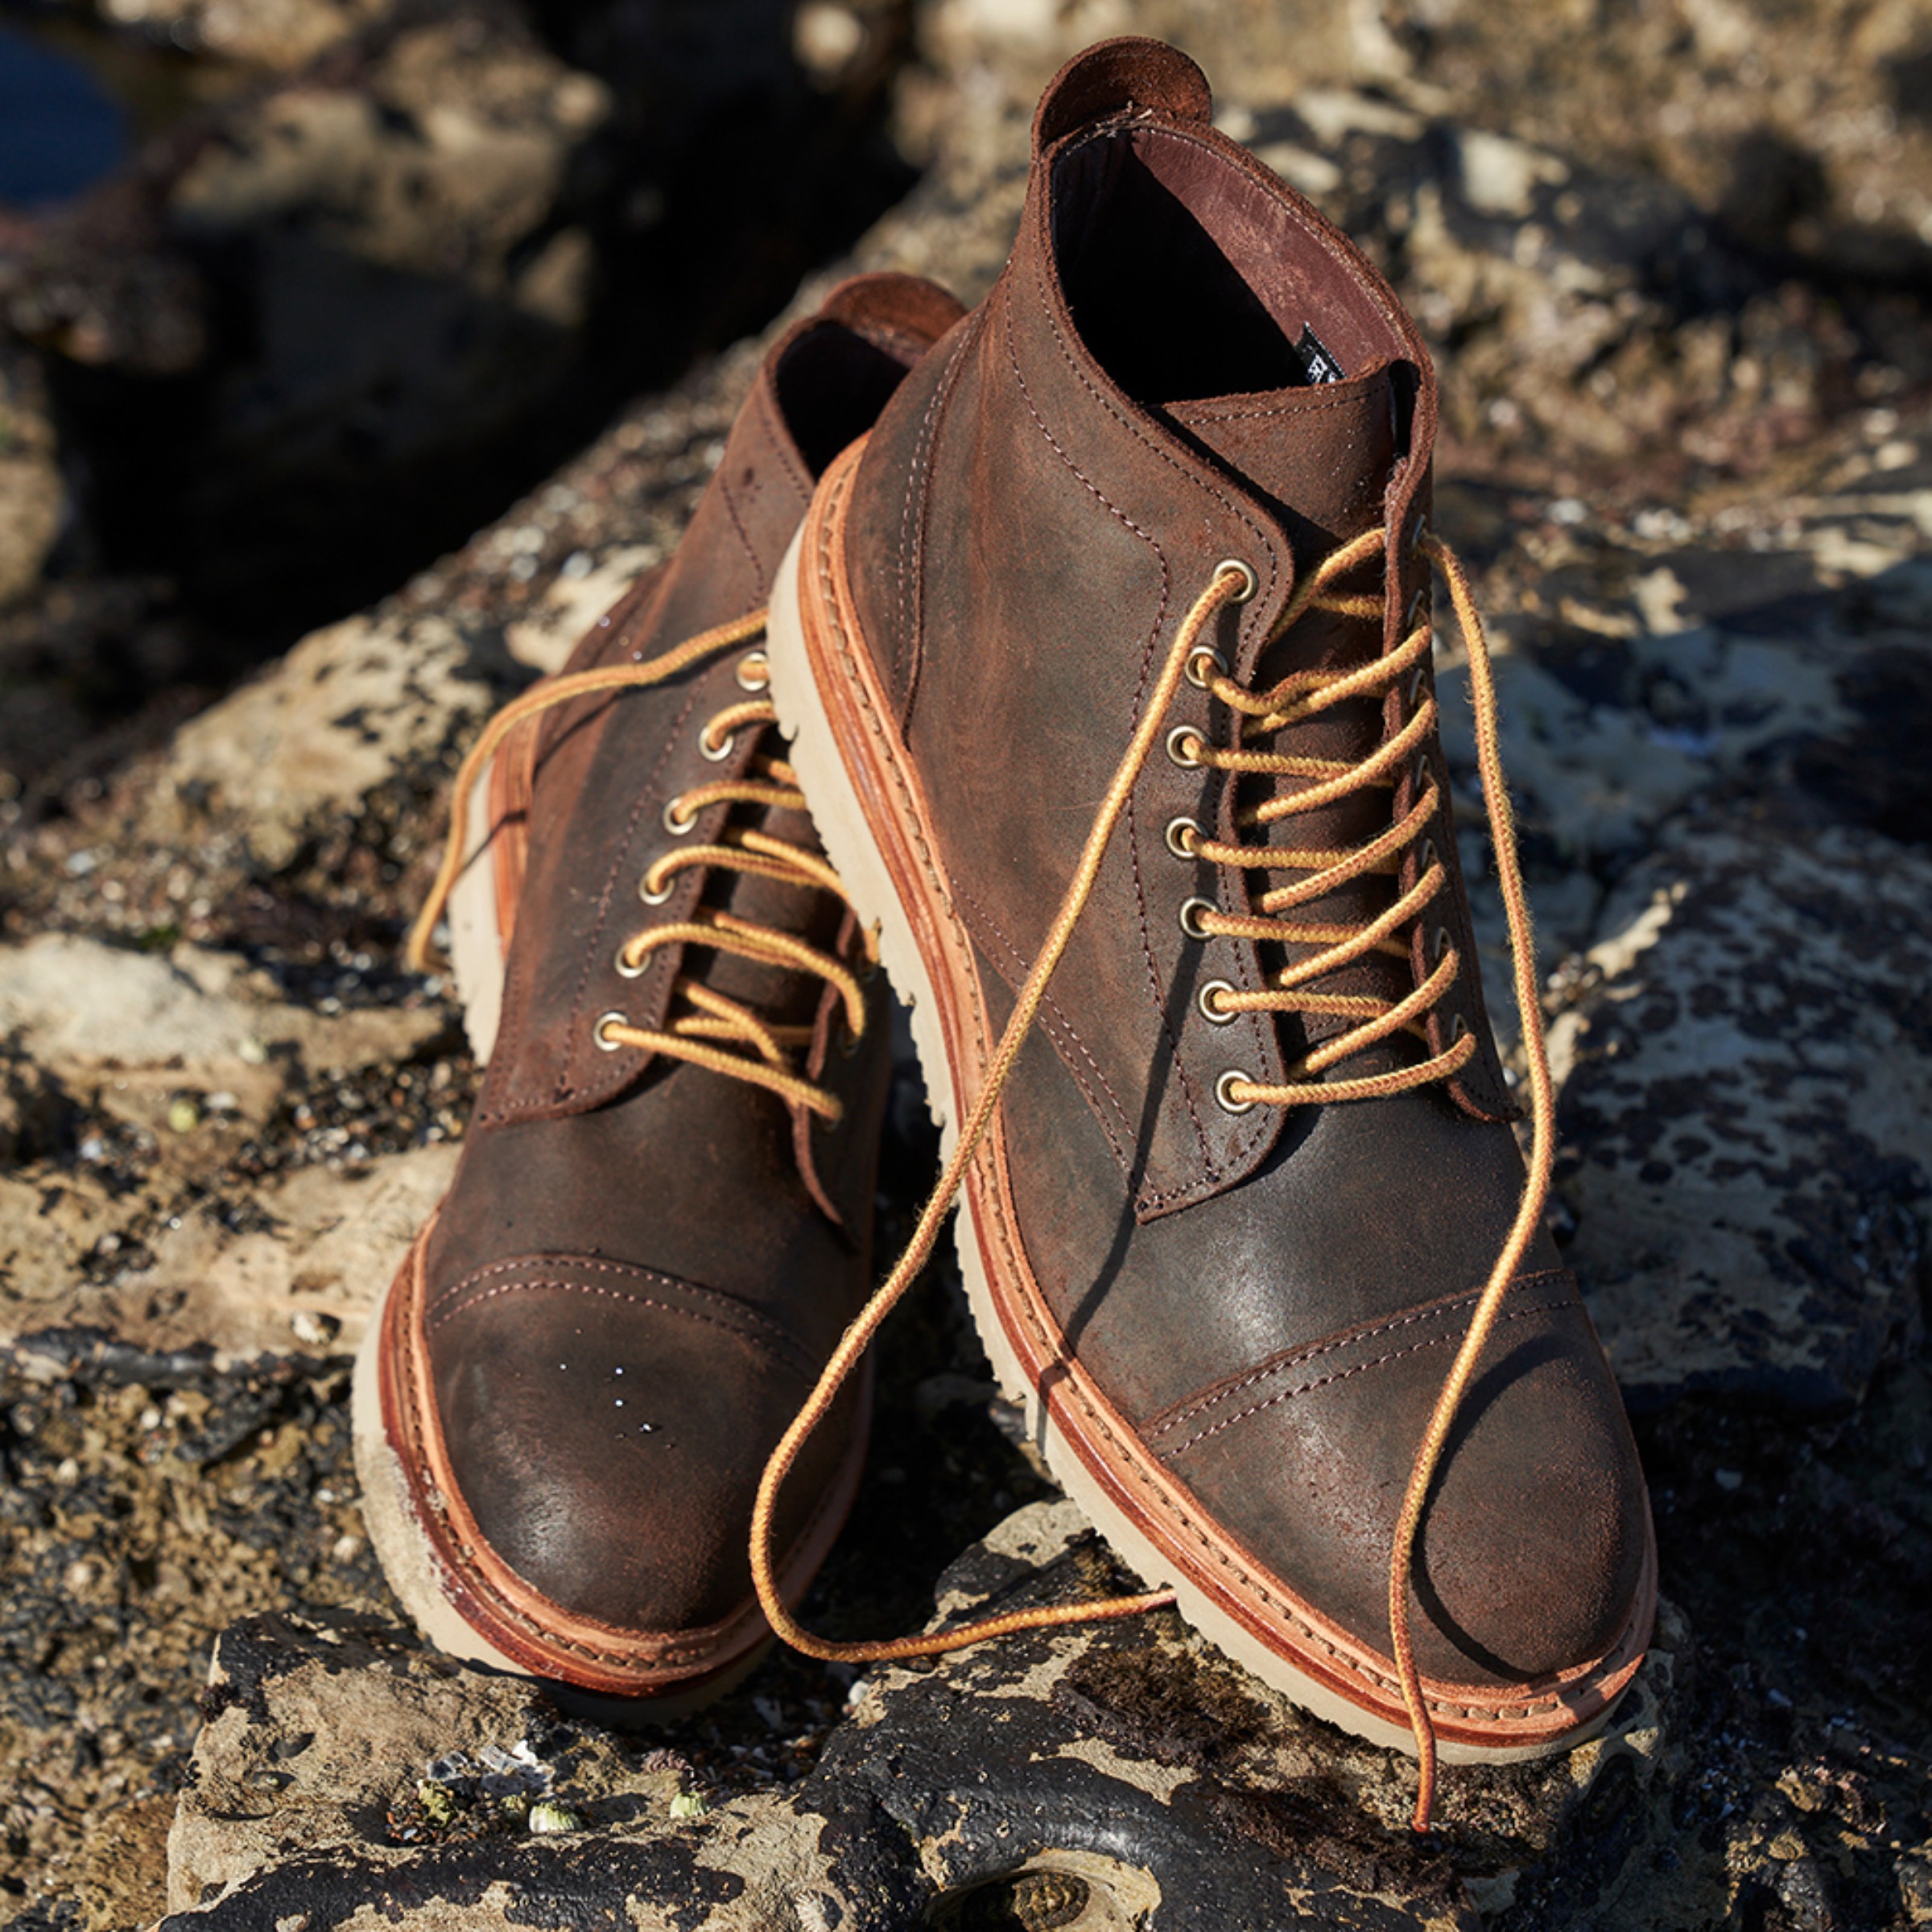 Park City Lace-up Weatherproof Boot | Men's Boots | Allen Edmonds